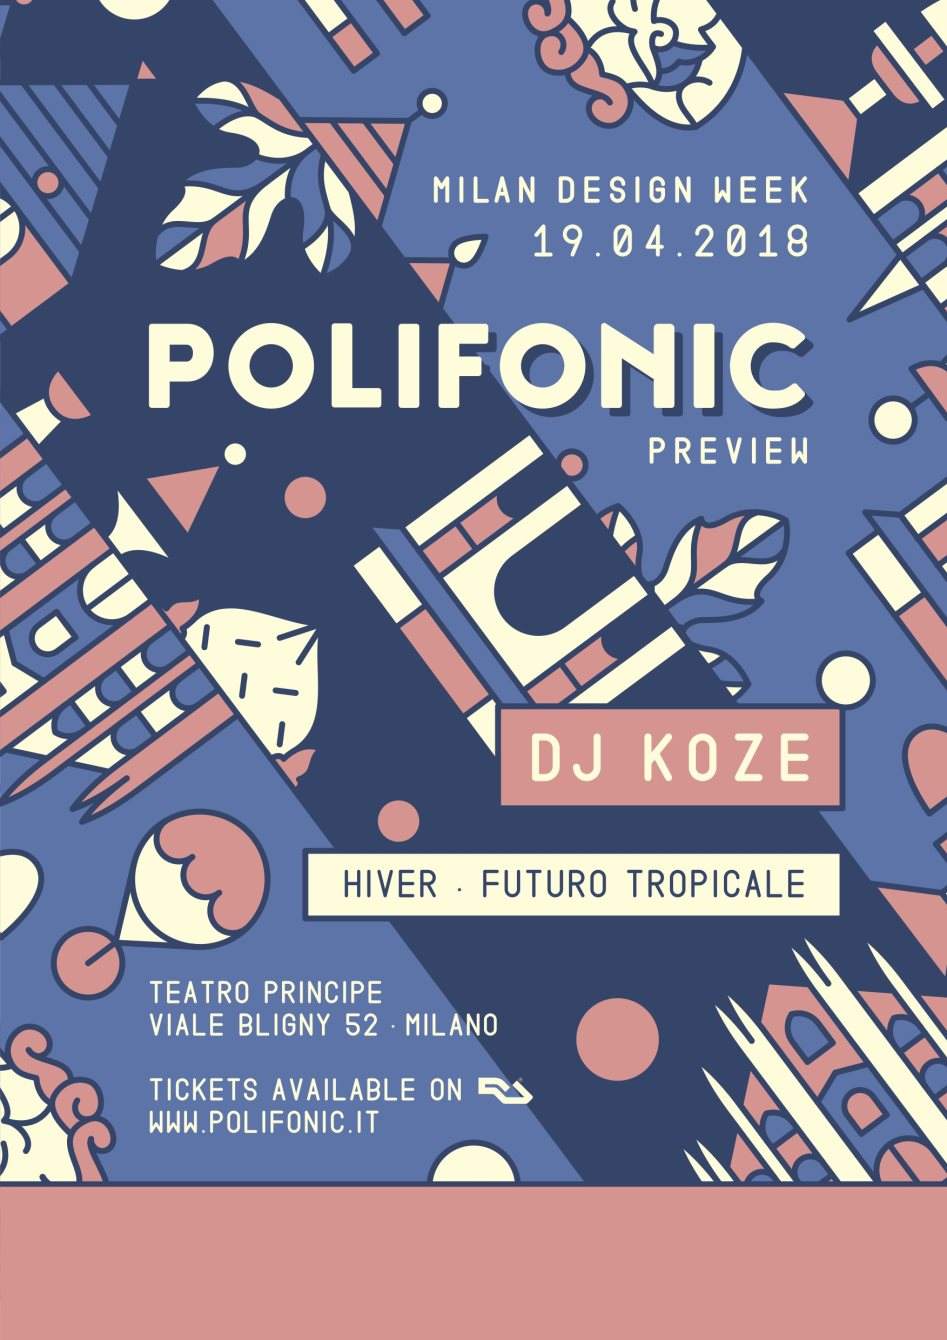 Polifonic Preview - MDW with DJ Koze - Página frontal